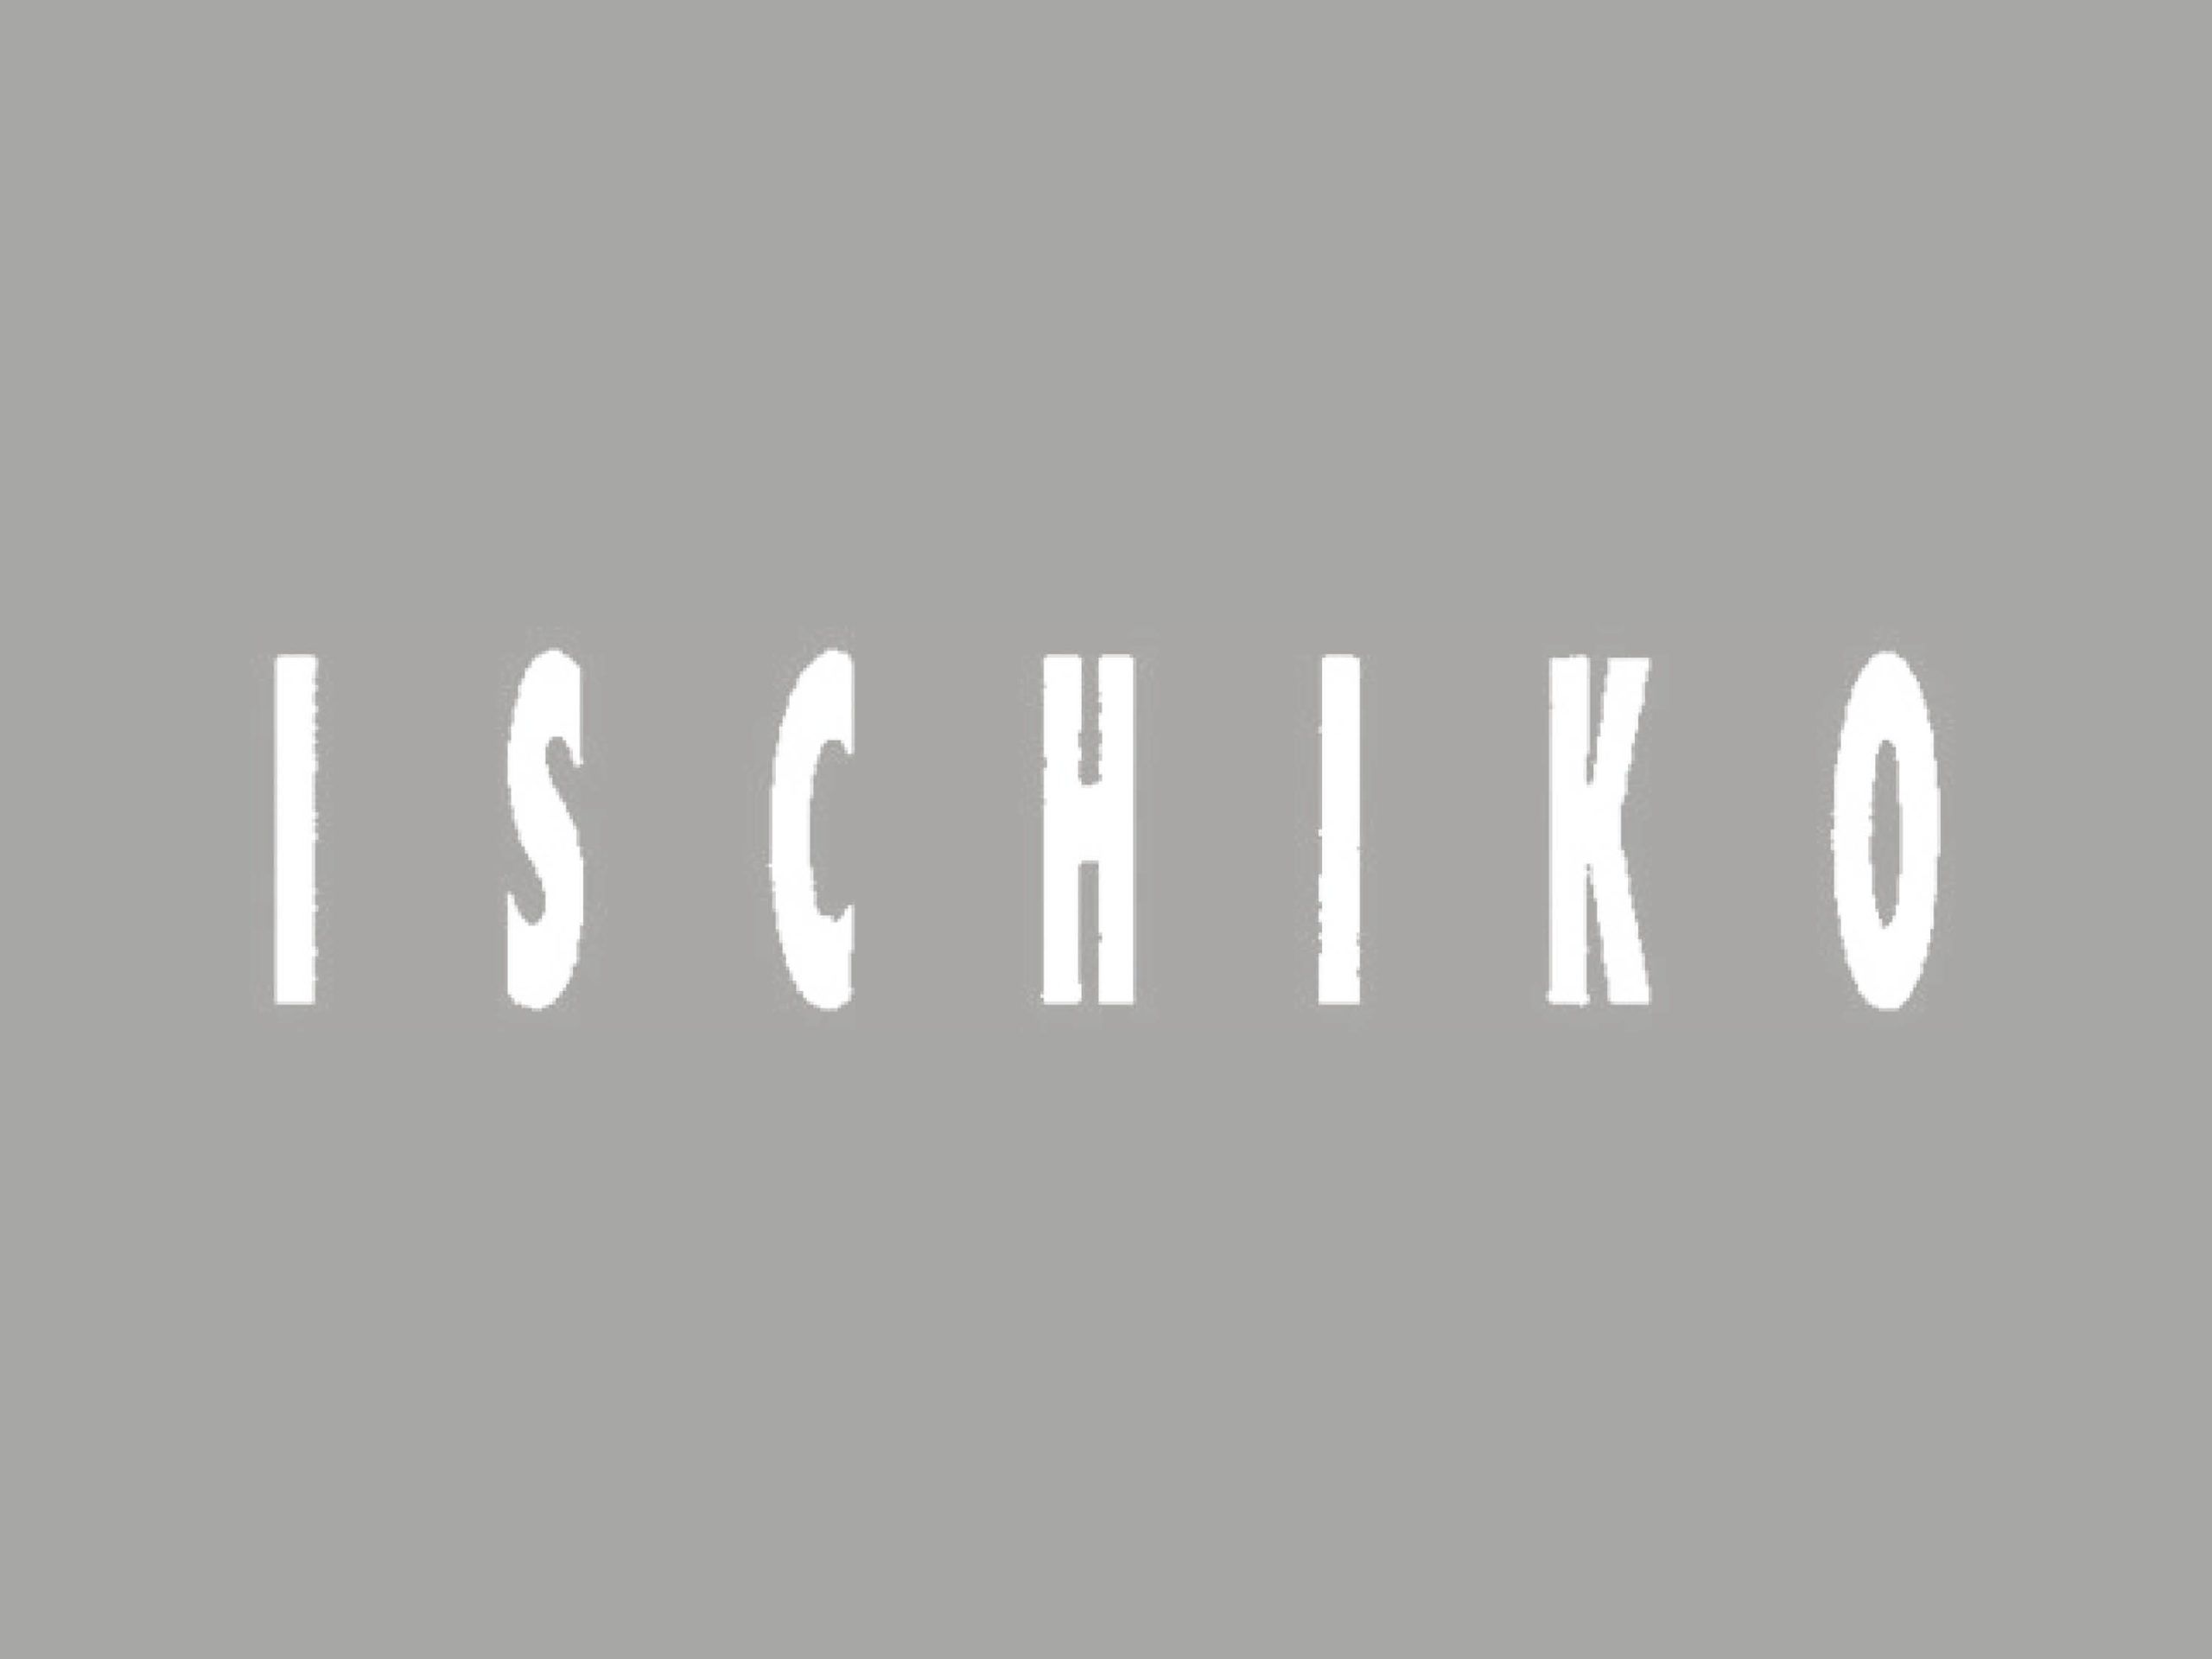 Ischiko_10